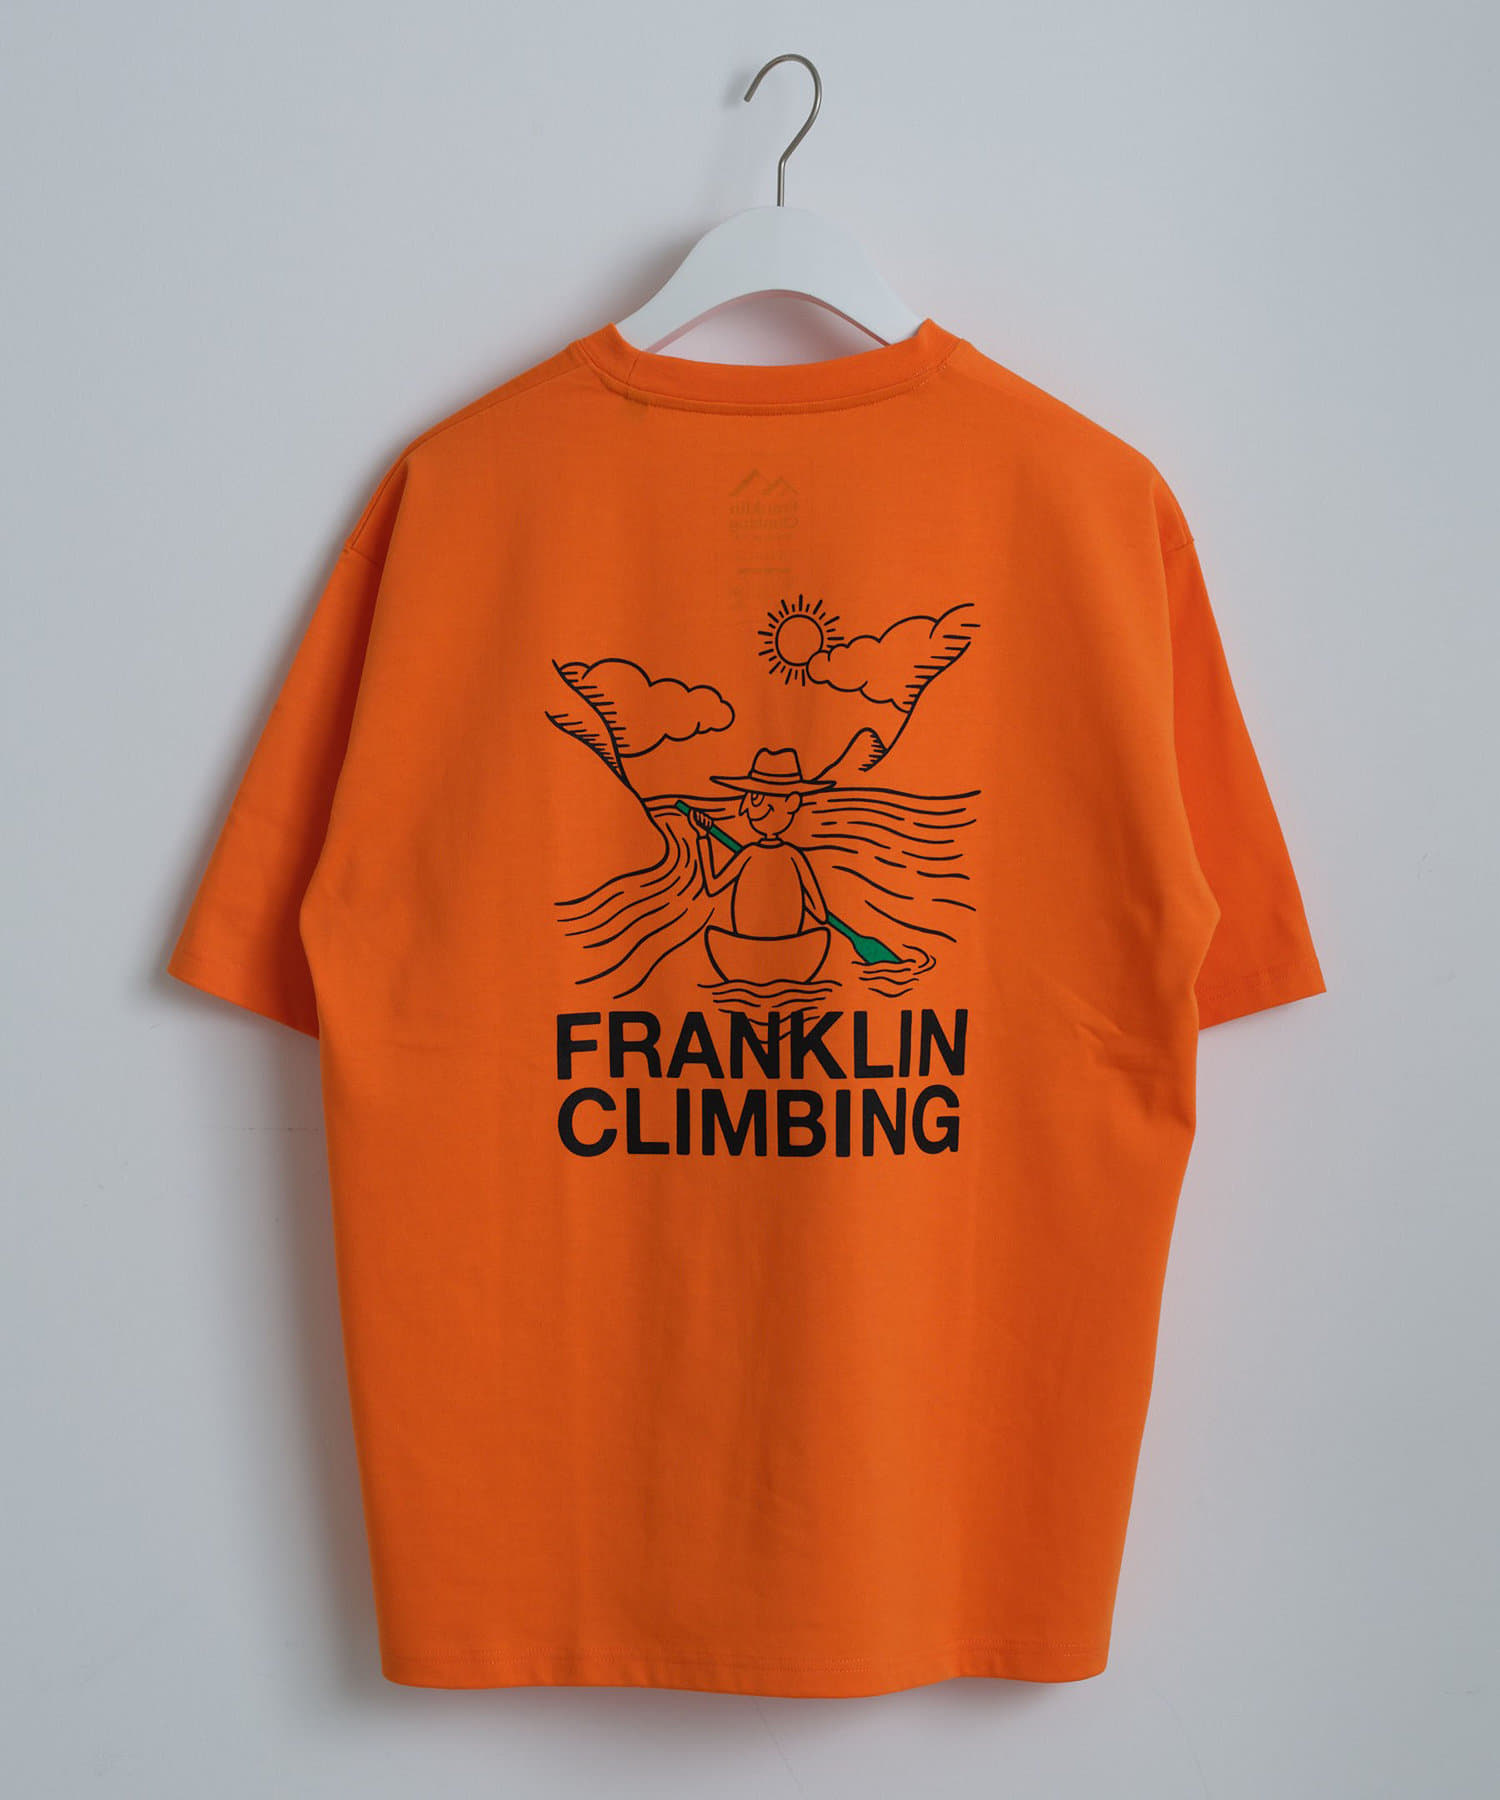 CIAOPANIC TYPY(チャオパニックティピー) 【Franklin Climbing】カヌーバックロゴプリントテック半袖Tee